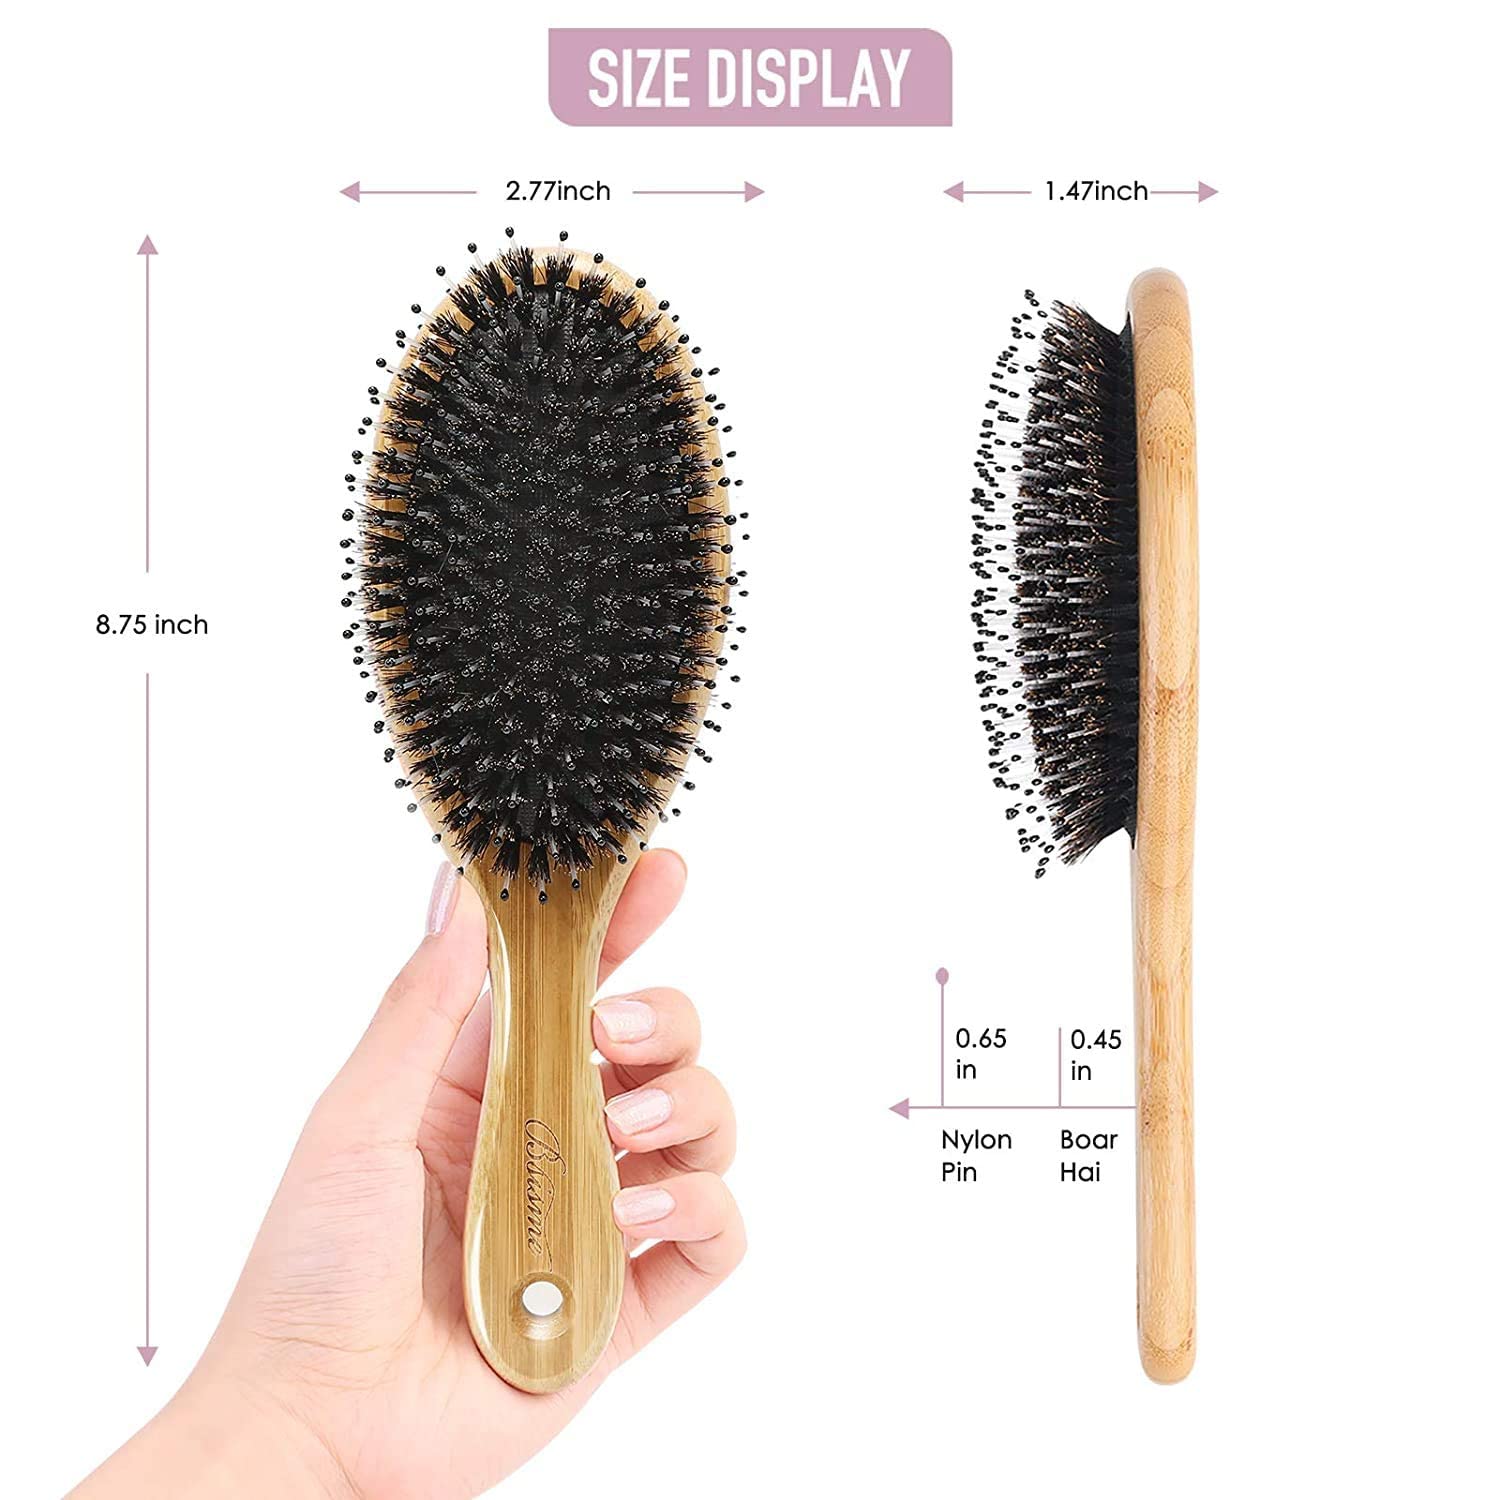 Mua Hair Brush Comb Set Boar Bristle Hairbrush for Curly Thick Long Fine  Dry Wet Hair,Best Travel Bamboo Paddle Detangler Detangling Hair Brushes  for Women Men Kids Adding Shine Smoothing Hair trên